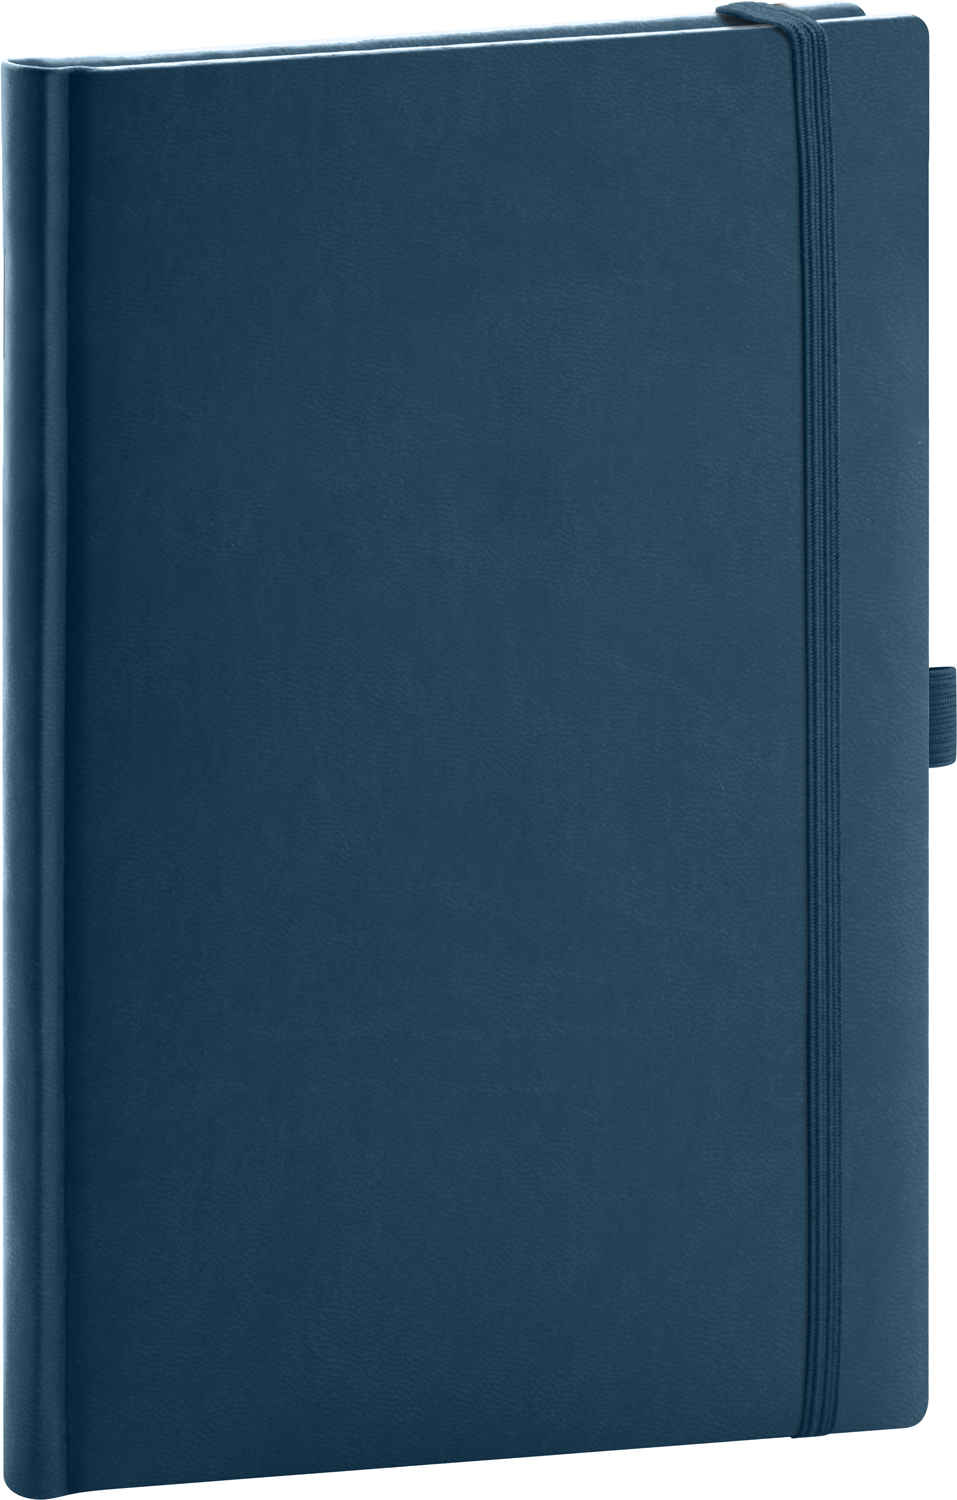 Linkovaný zápisník Aprint Neo, A5 - modrá